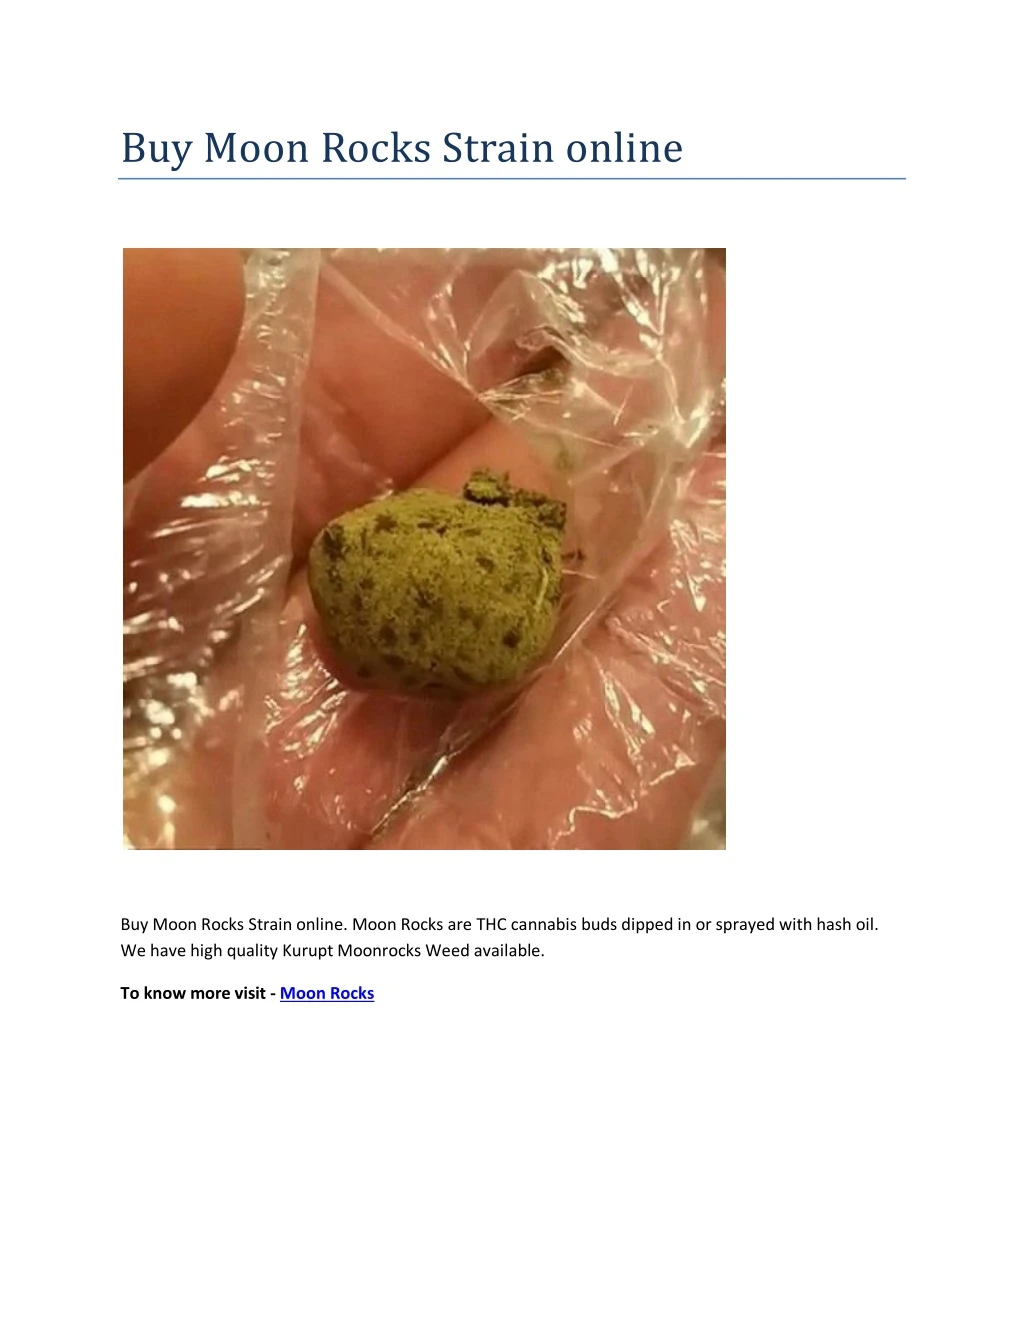 buy moon rocks strain online